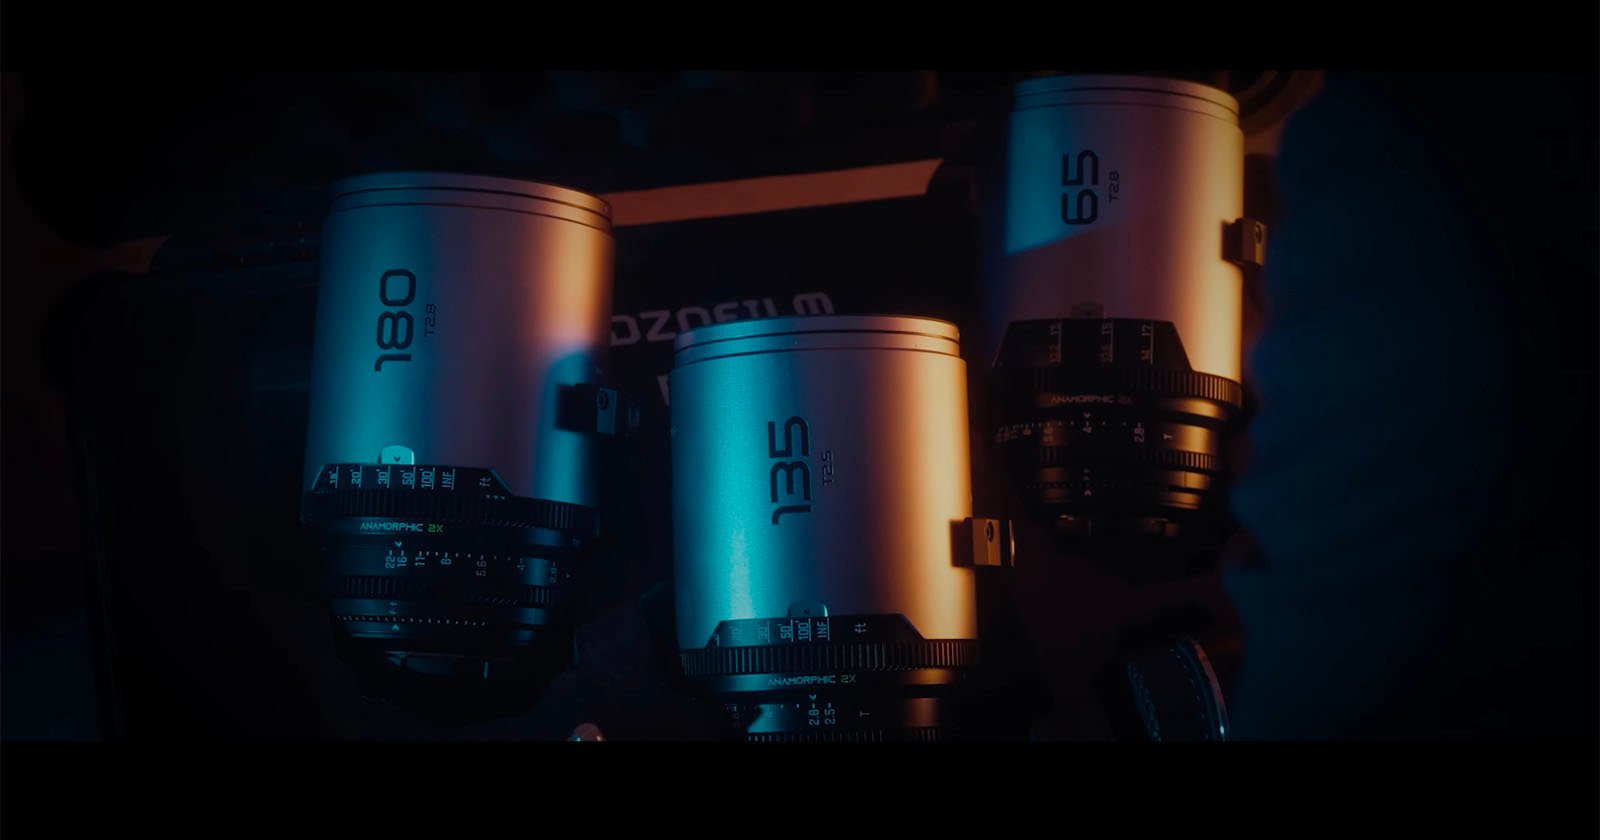 Dzofilm Launches Trio of Sleek New Anamorphic Lenses